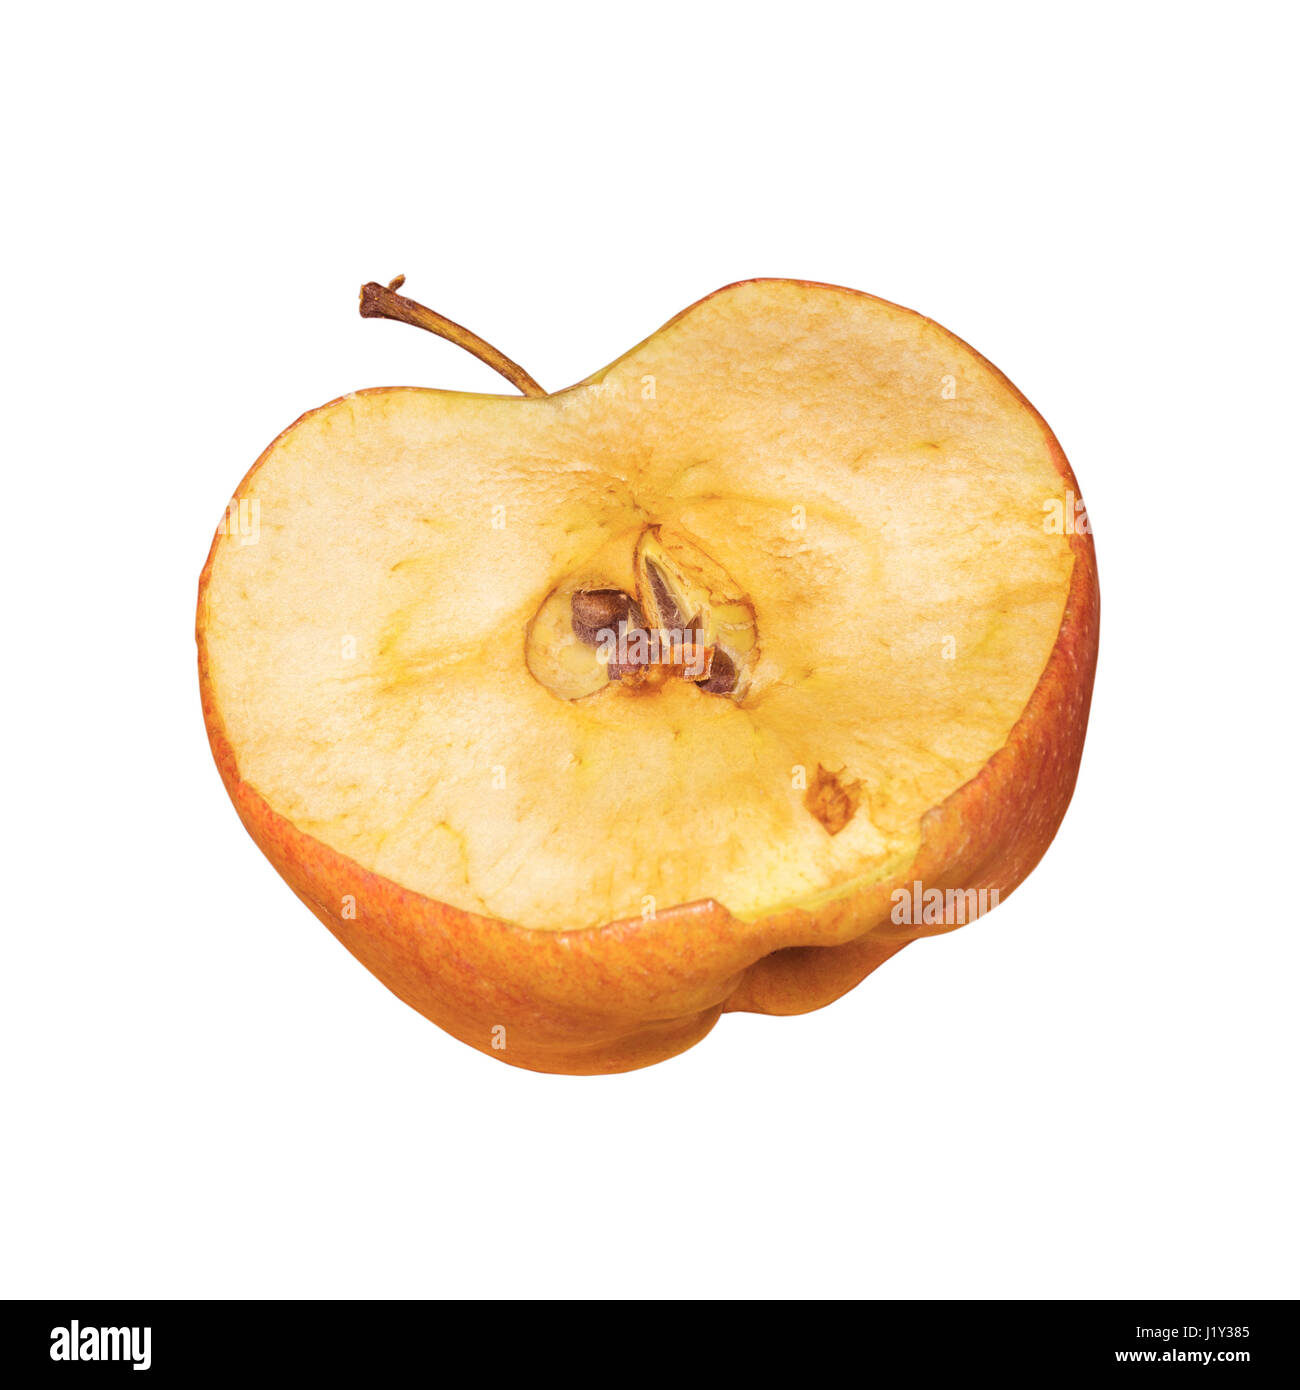 Apple Sliced In Half Stock Photo Alamy